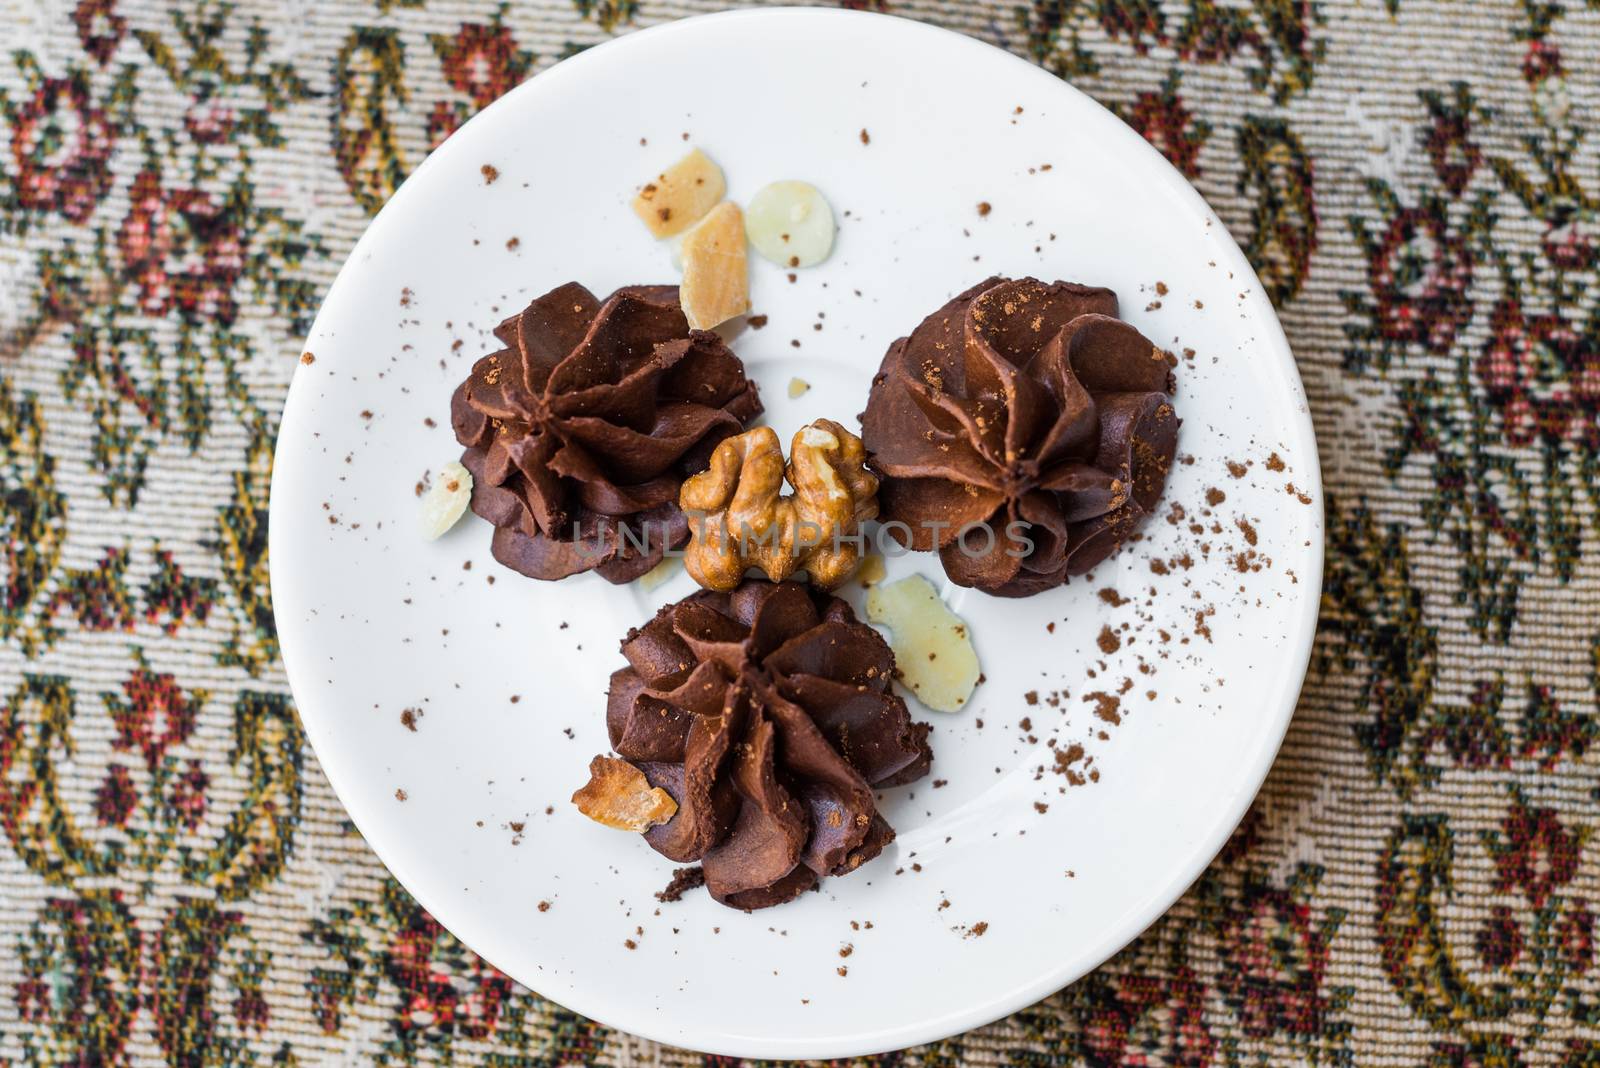 Homemade chocolate truffles with nuts by okskukuruza